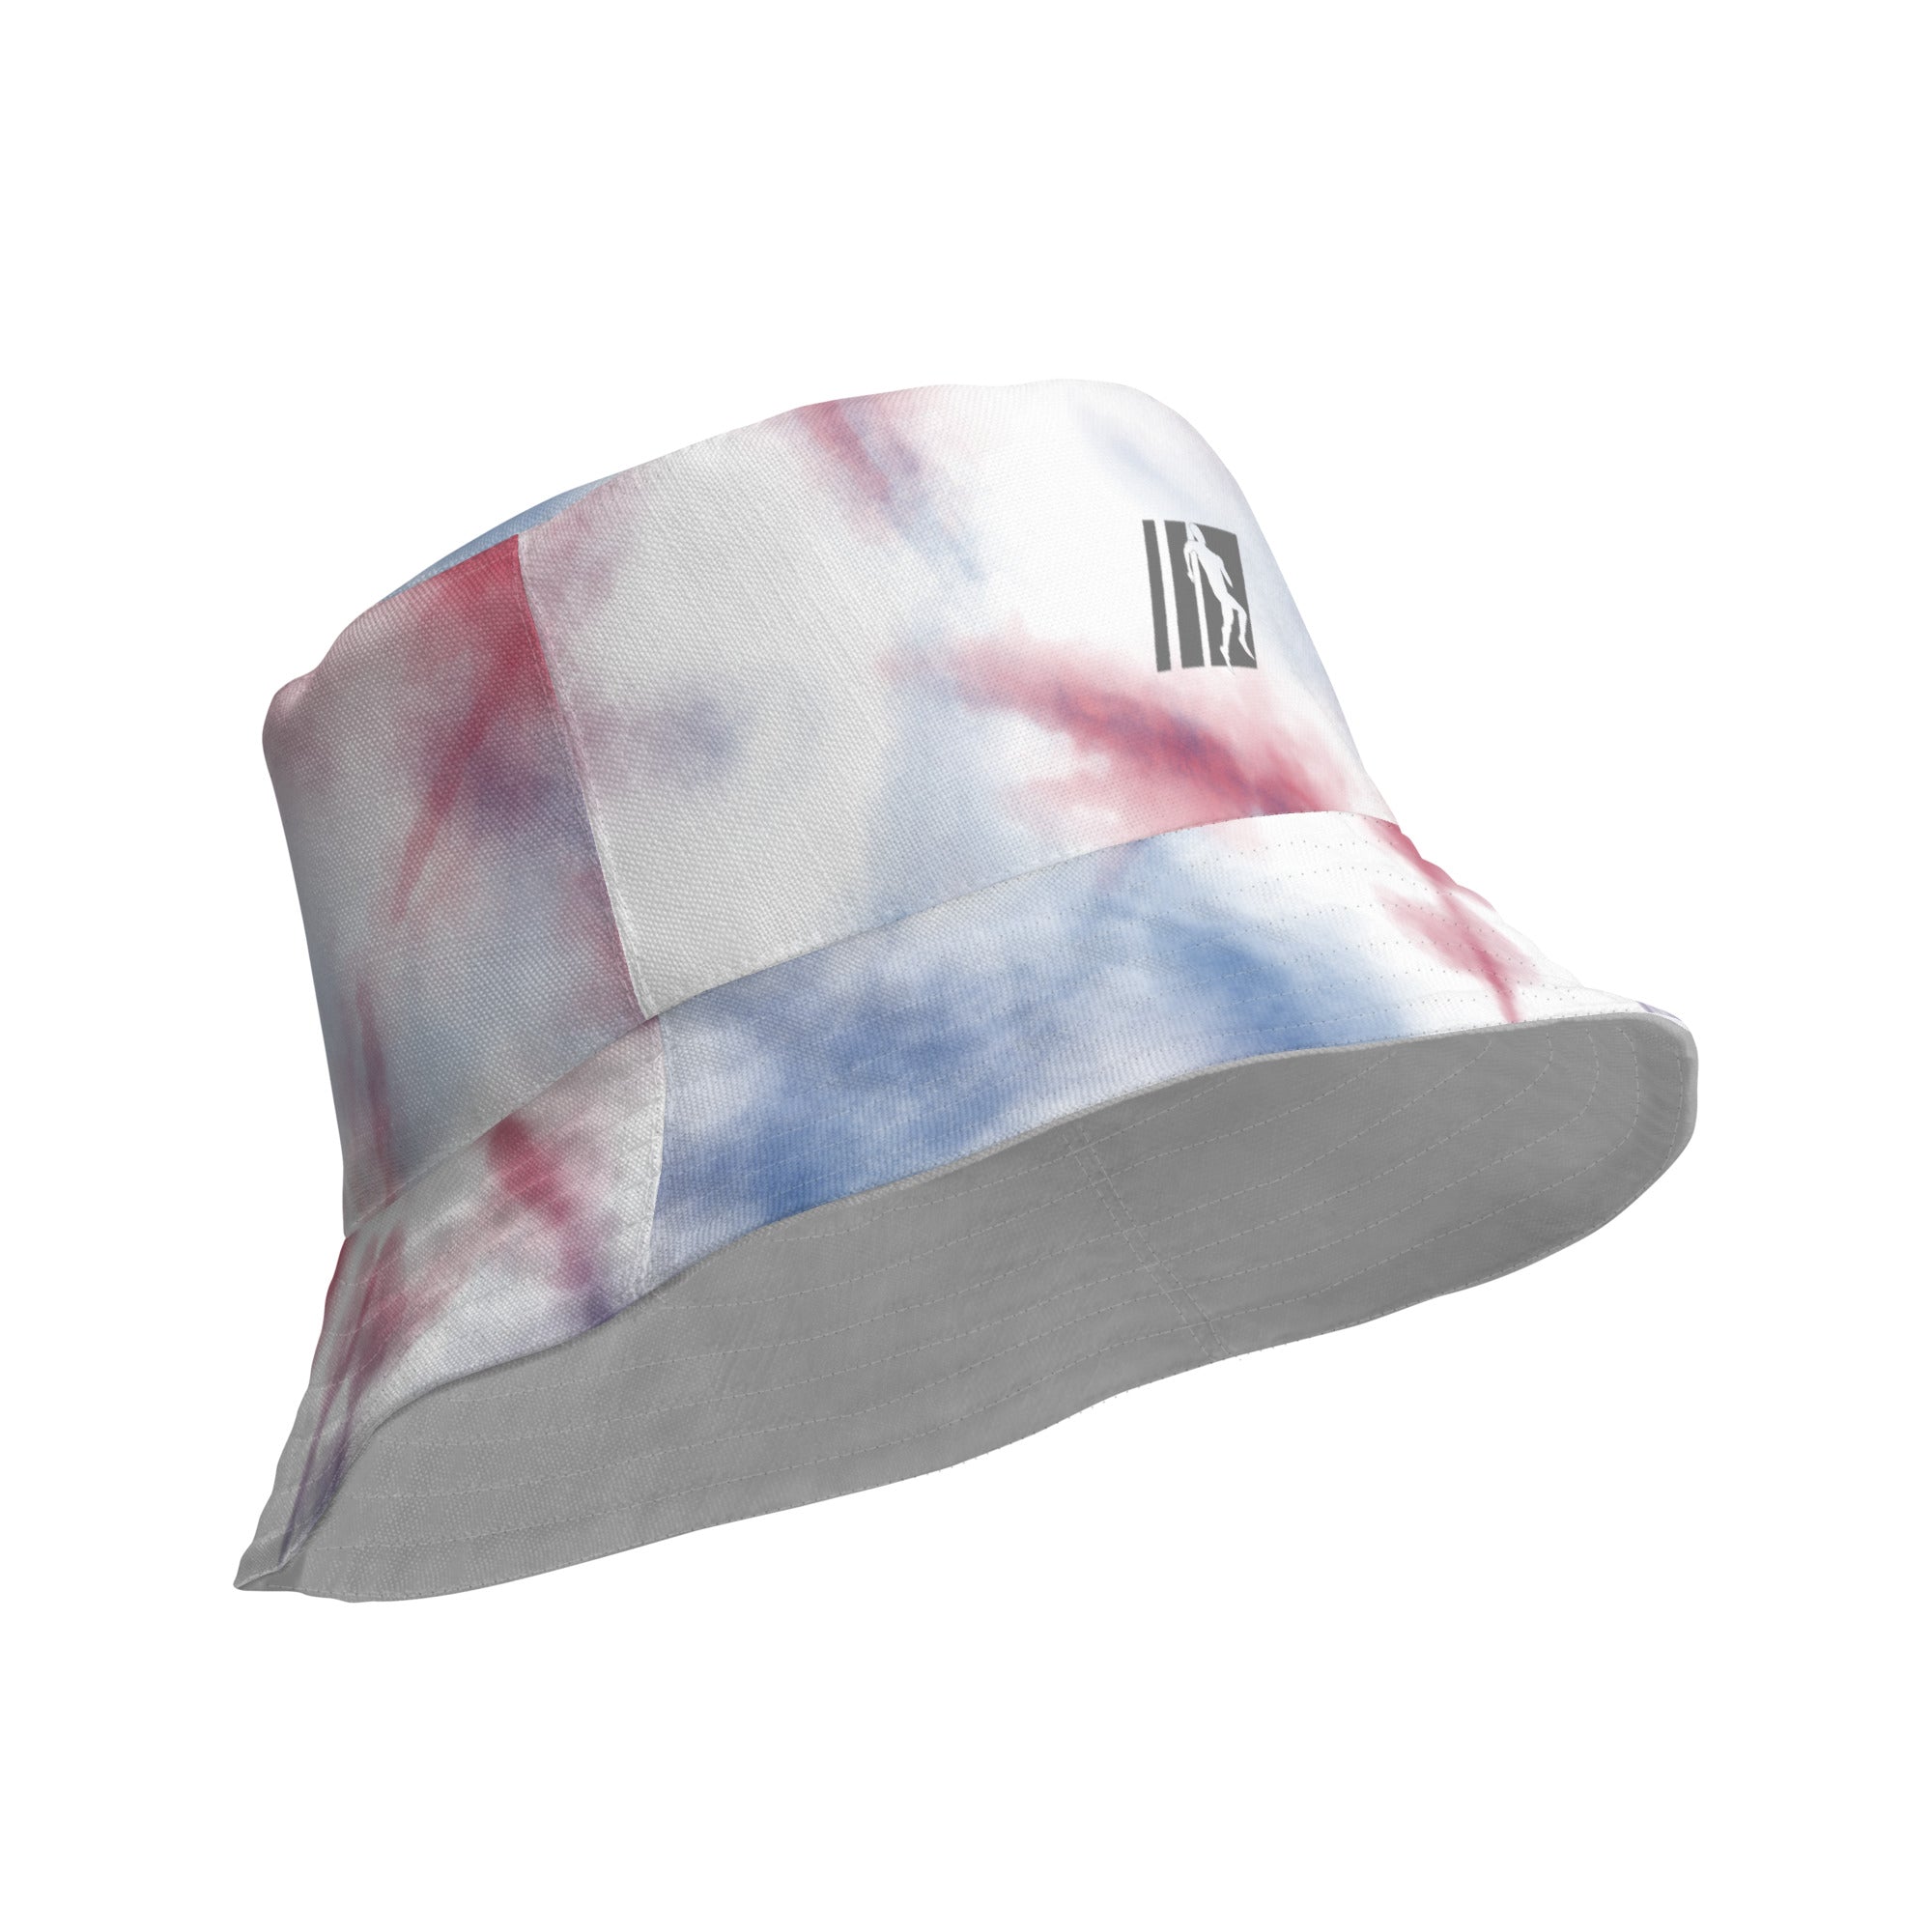 AGAD Summer 24 (Azurojo) Bucket Hat